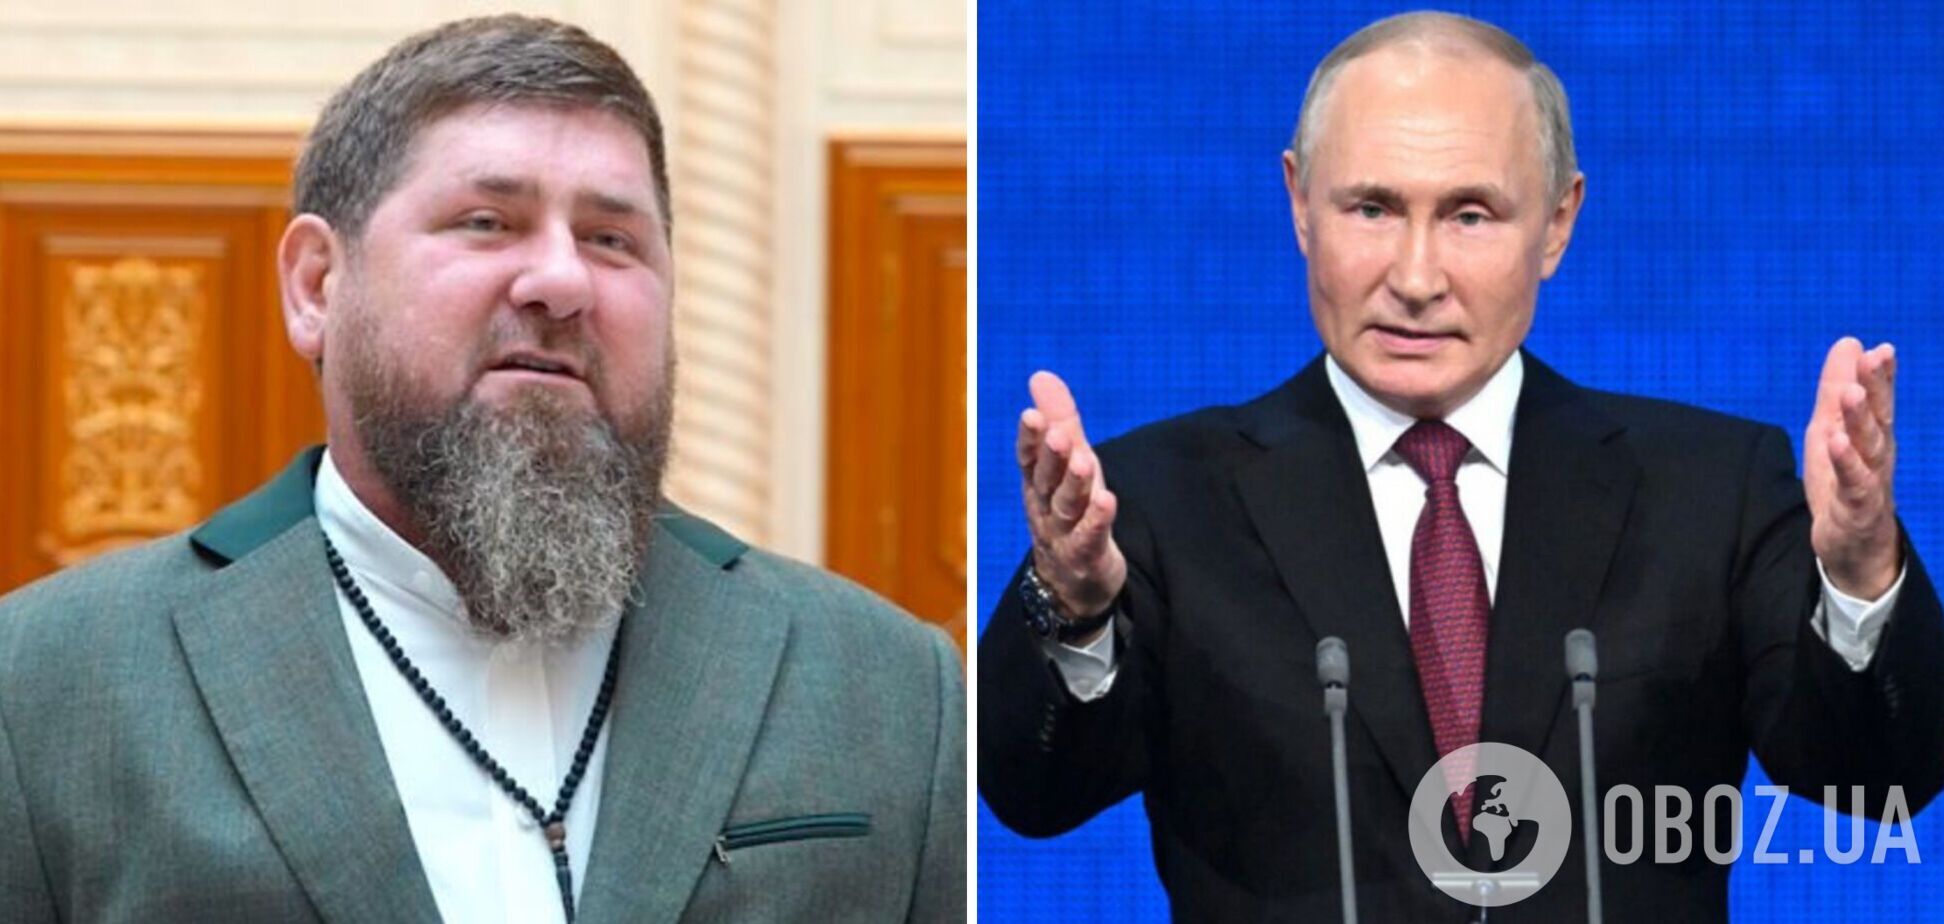 Кадыров 'отцензурировал' обращение Путина к Федеральному собранию: стало известно, какой отрывок 'вычеркнул'